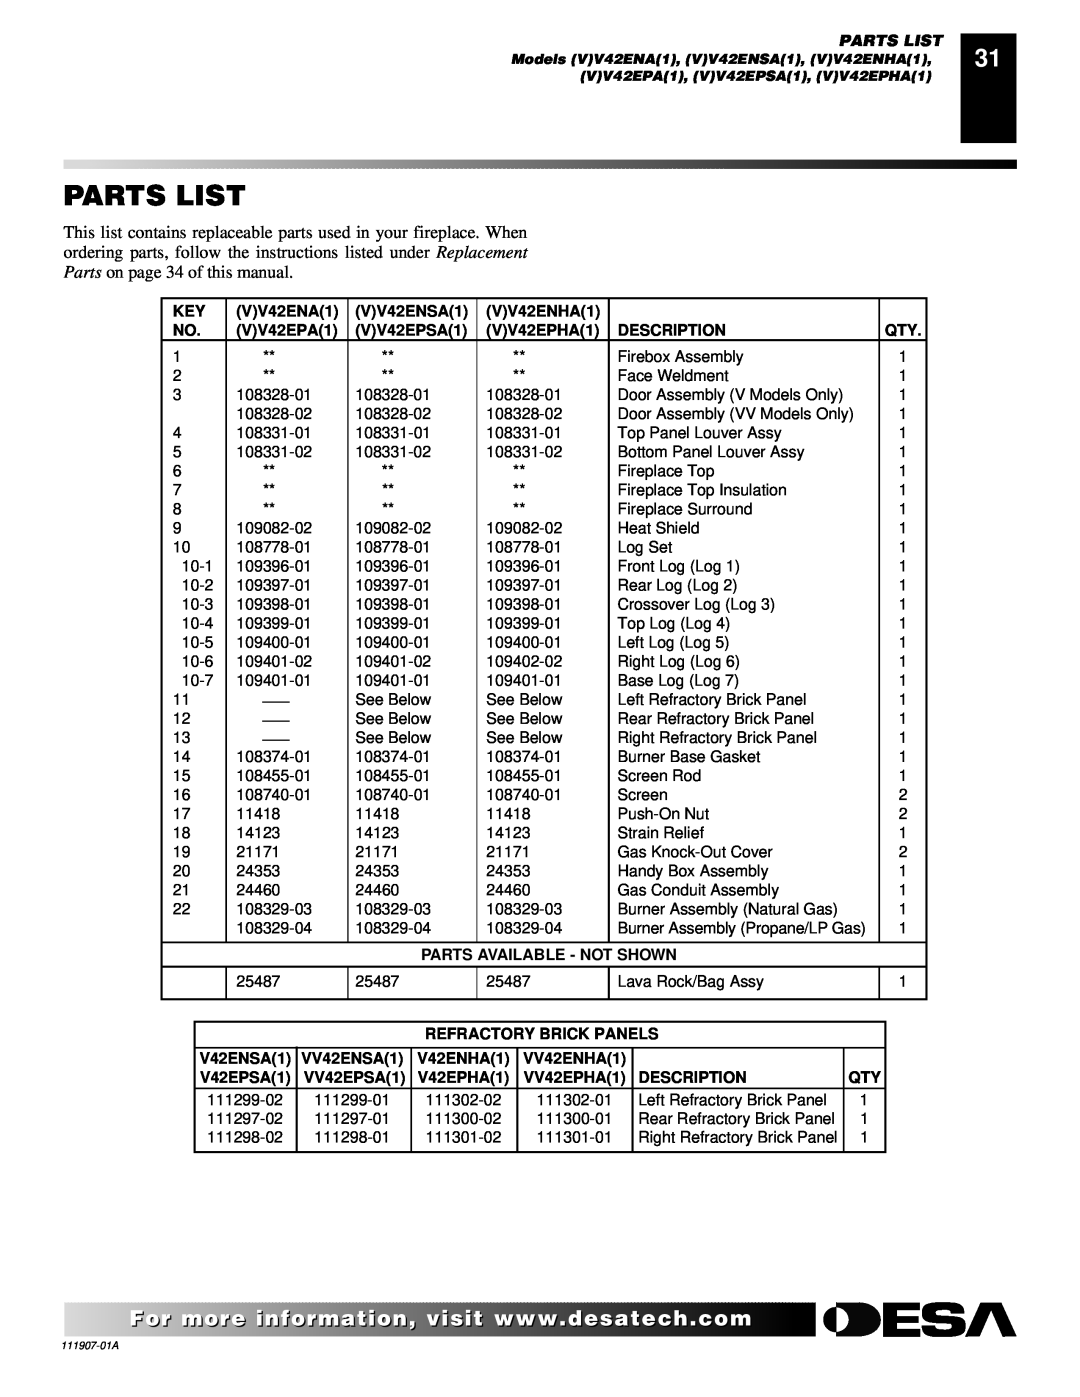 Desa (V)V42EPA(1), (V)V42ENA(1) installation manual Parts List 